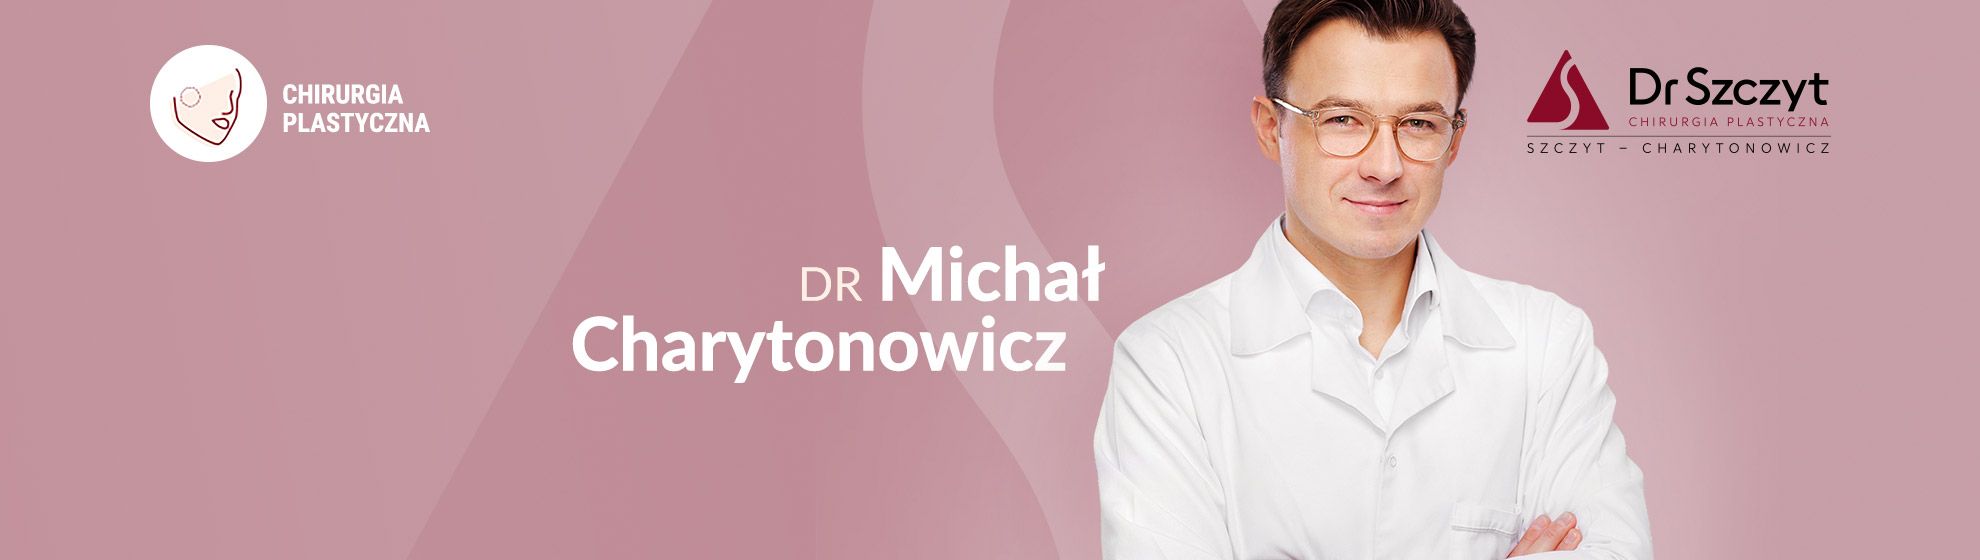 Dr Michał Charytonowicz